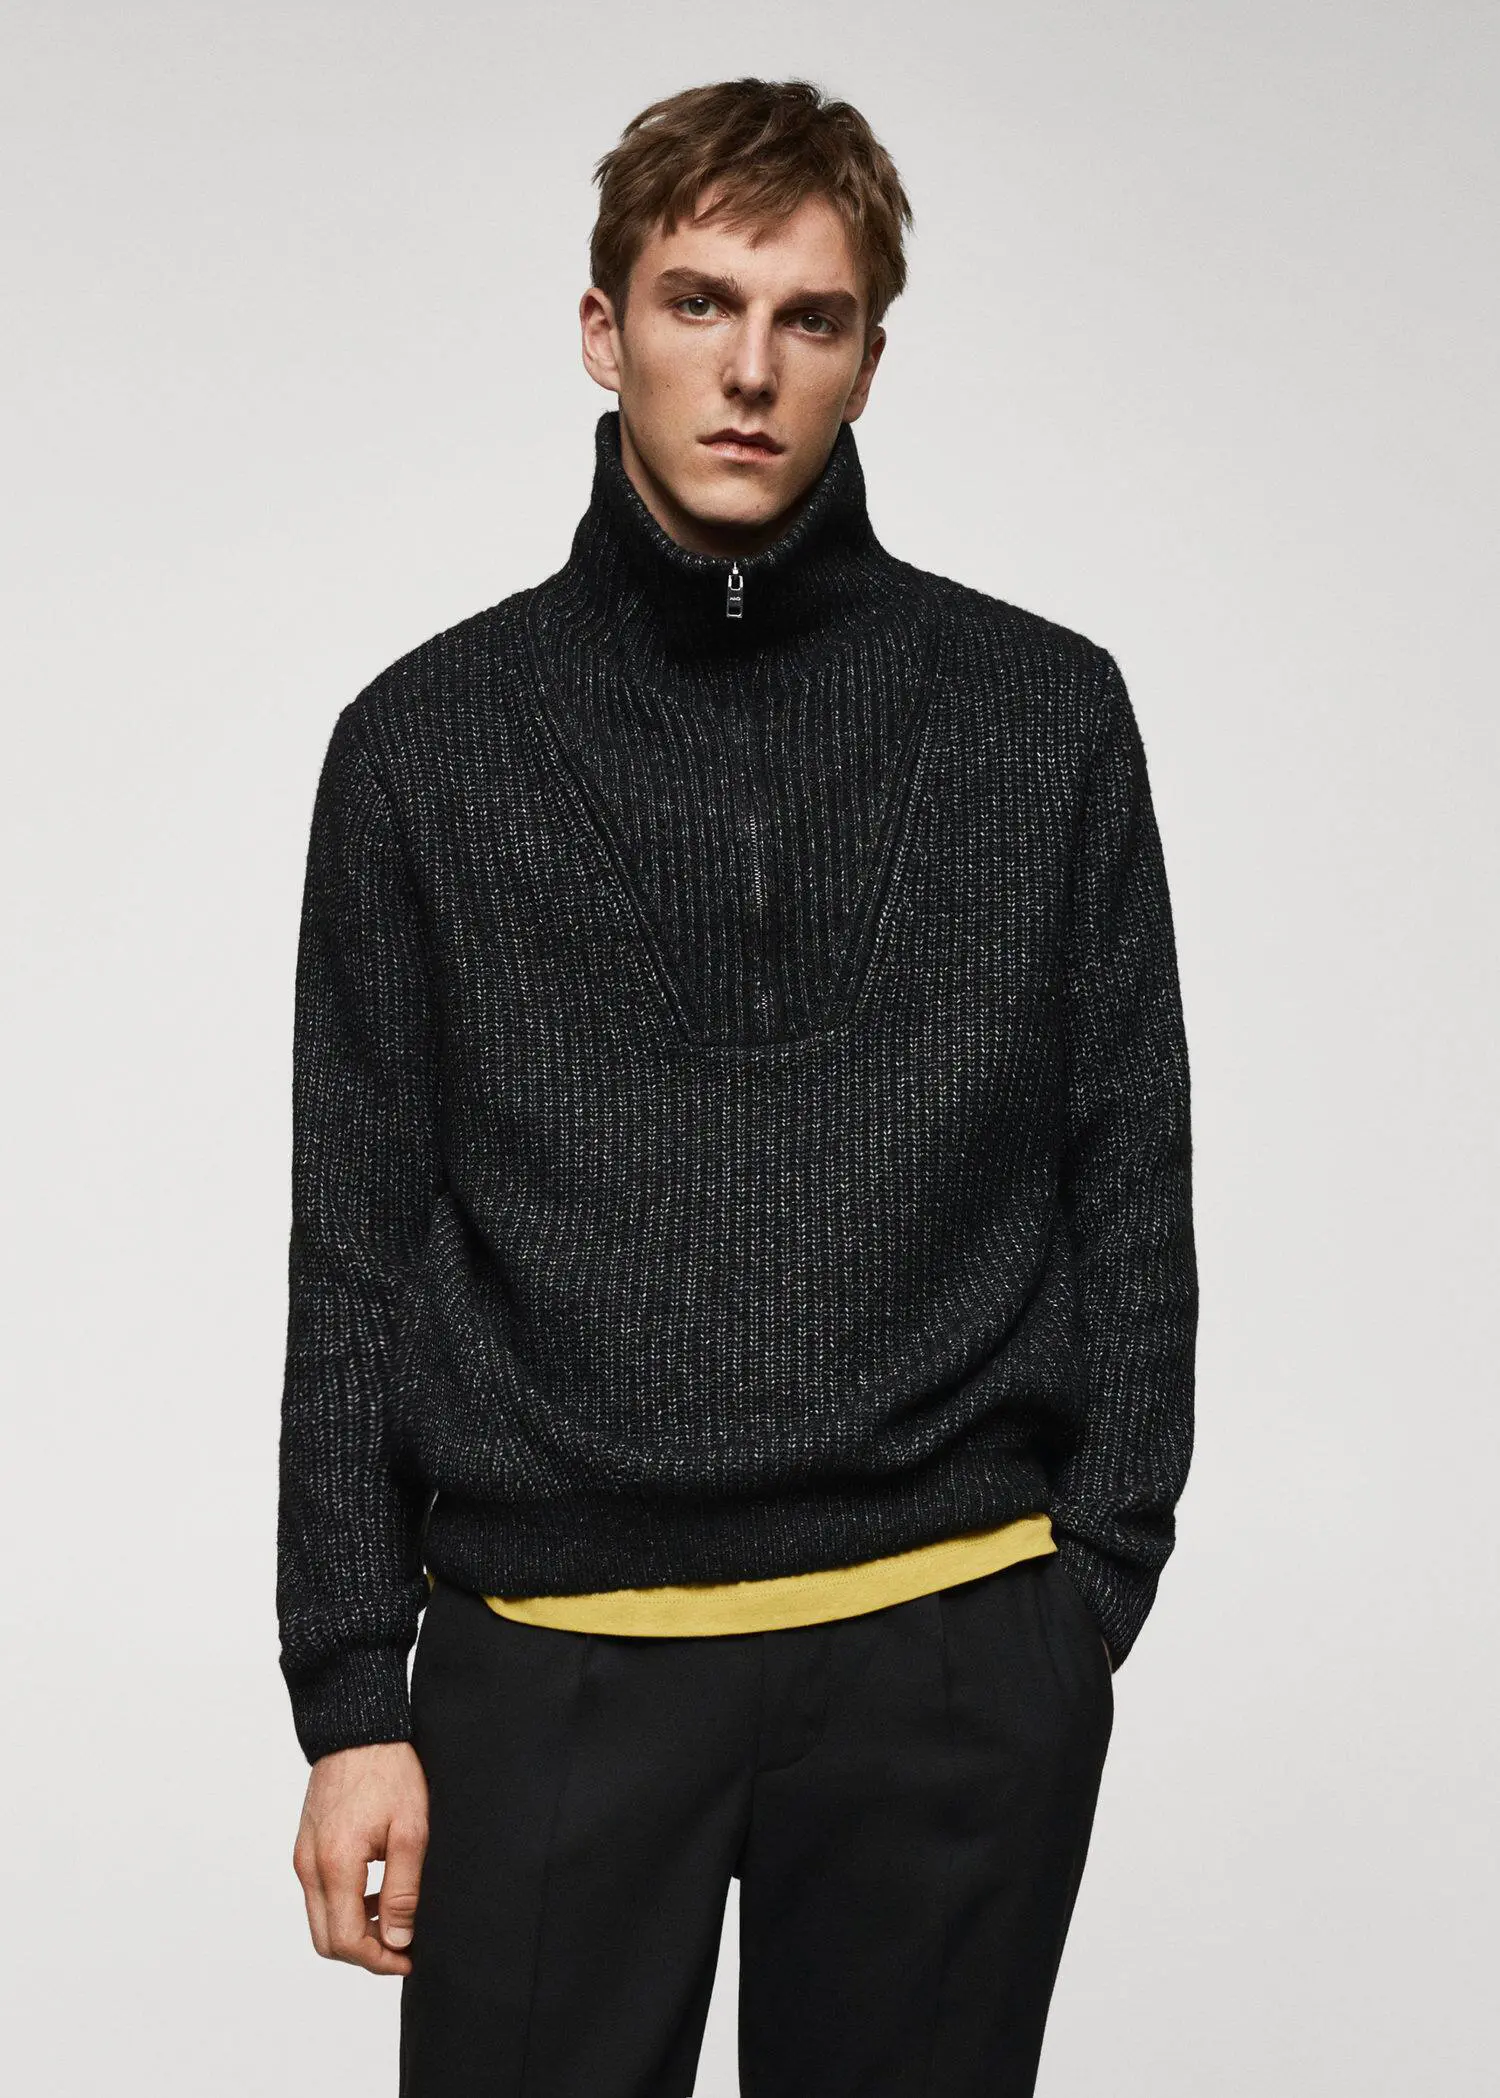 Mango Perkins zip neck wool sweater. 2